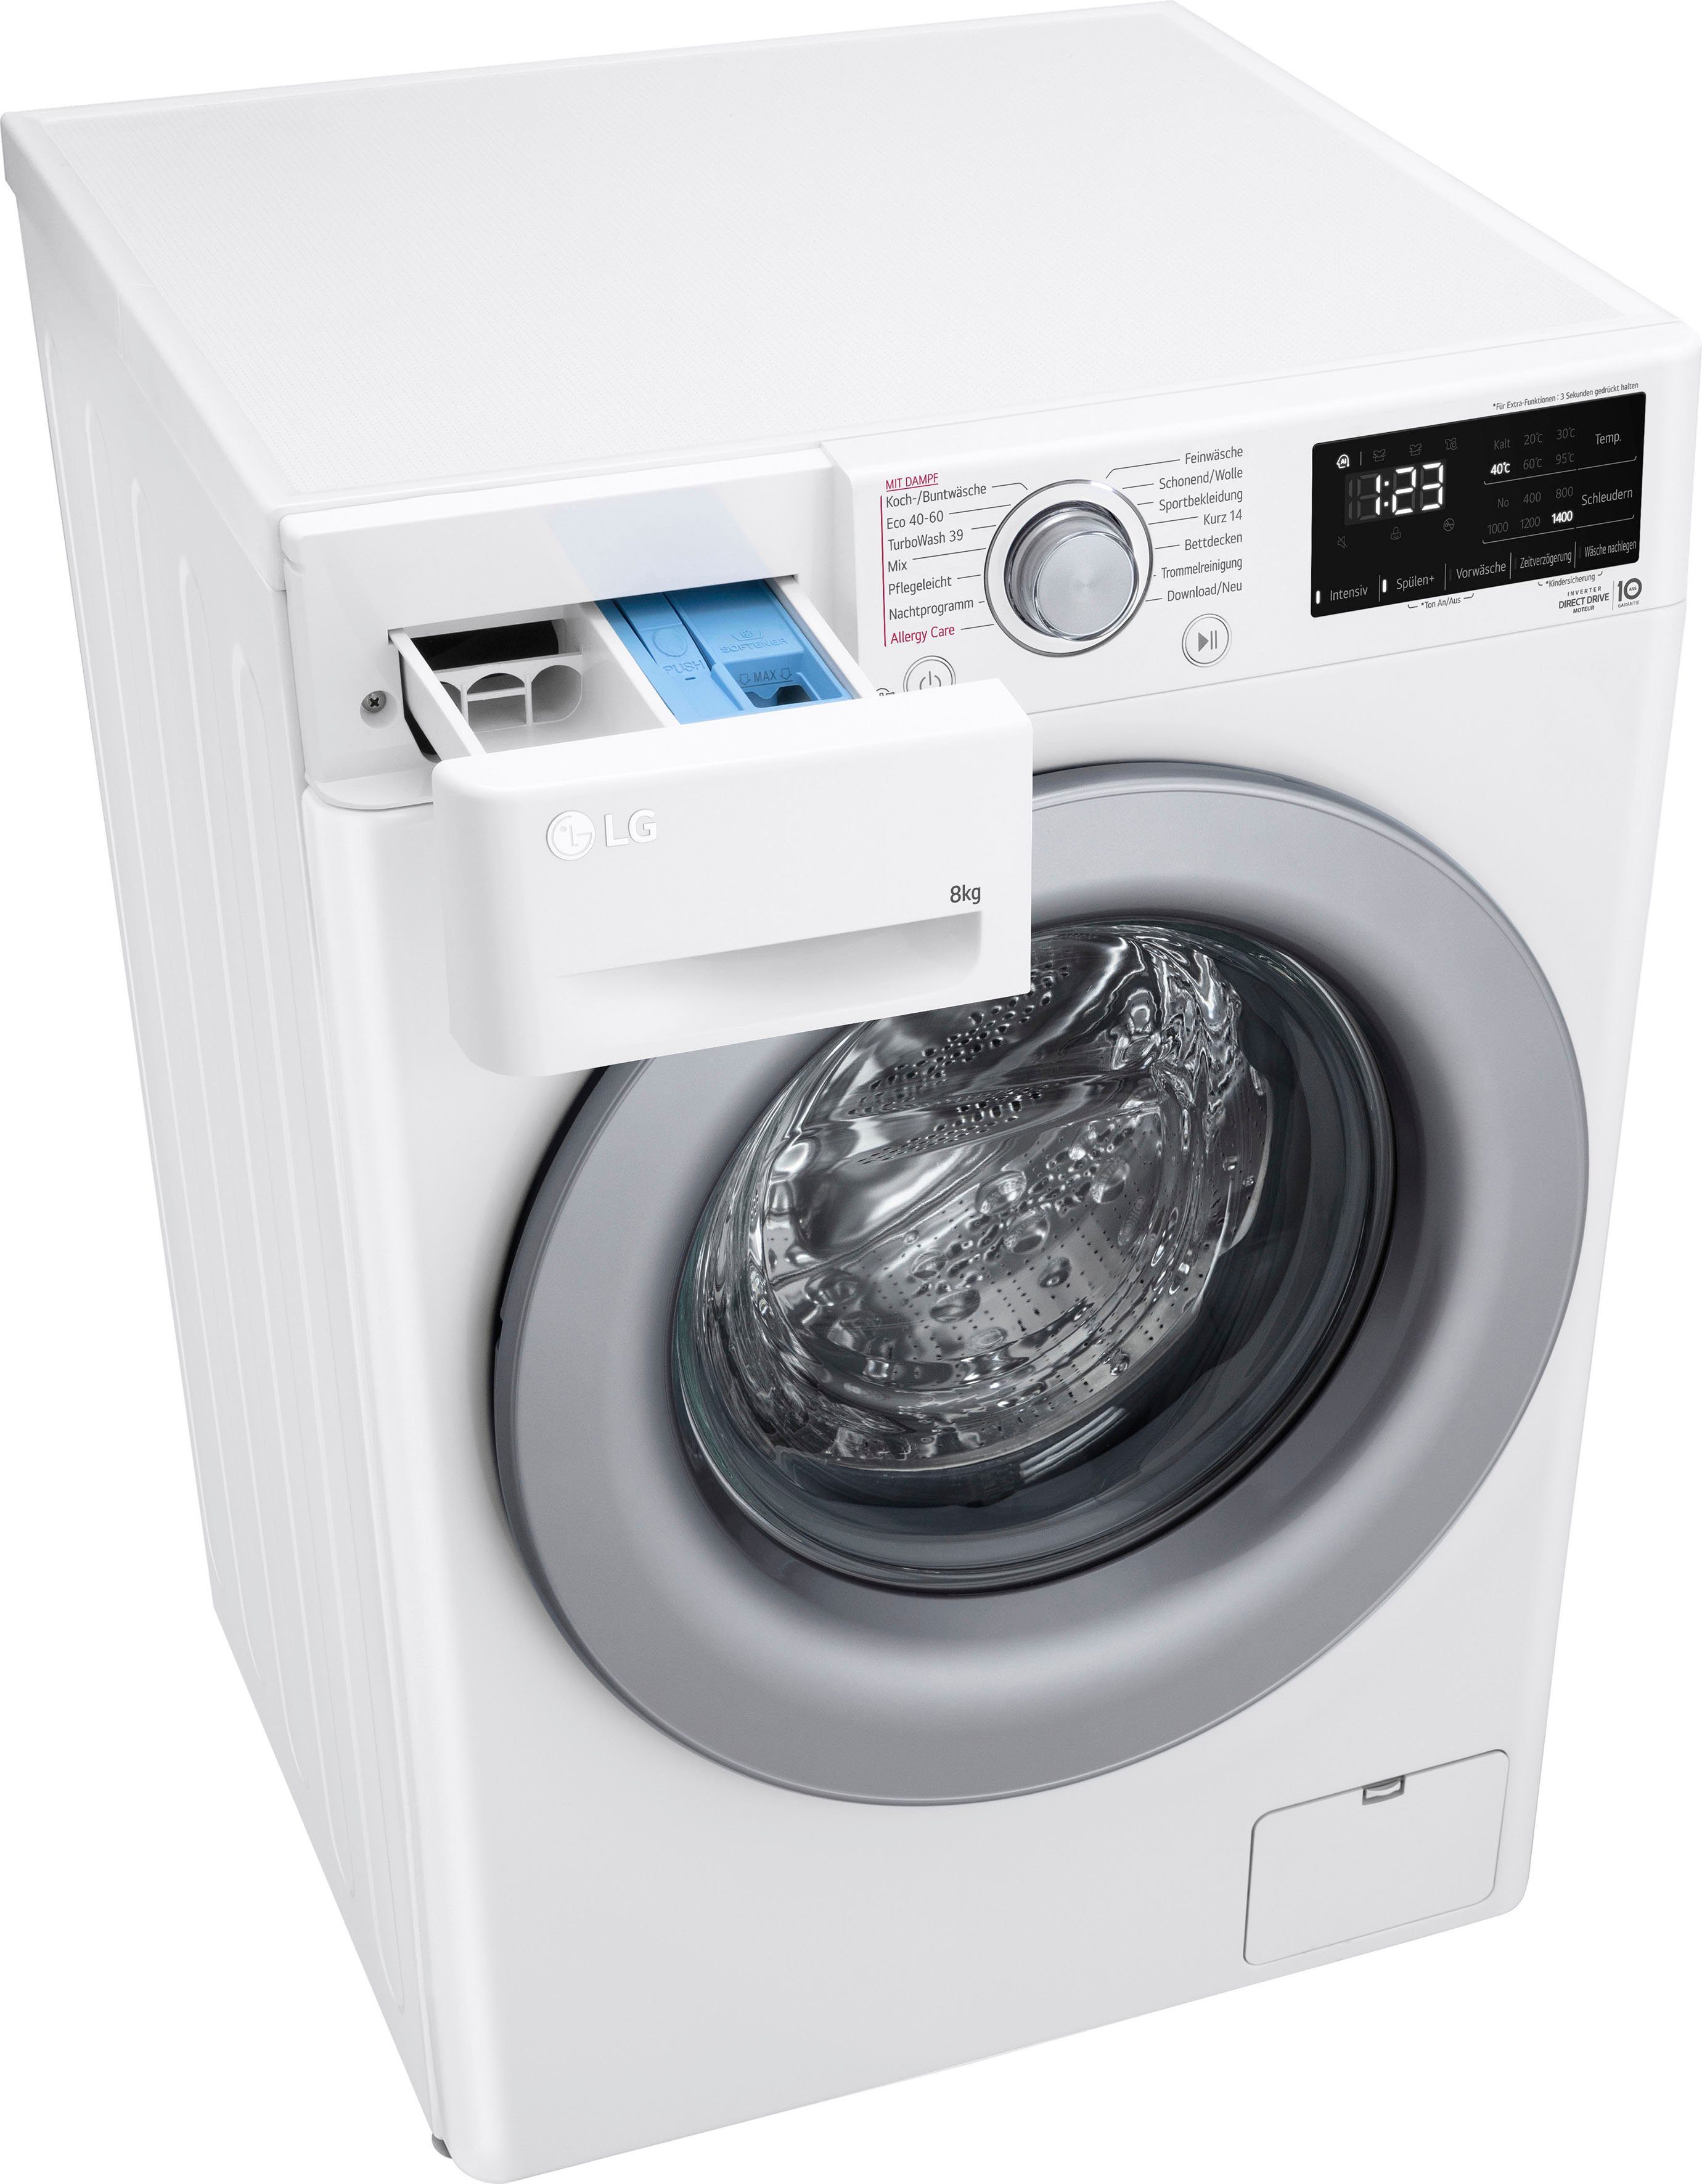 LG Waschmaschine Serie 3 F4WV3284, 8 kg, 1400 U/min, Steam: Tiefenreinigung  mit Dampf mit speziellen Programmen wie Allergy Care